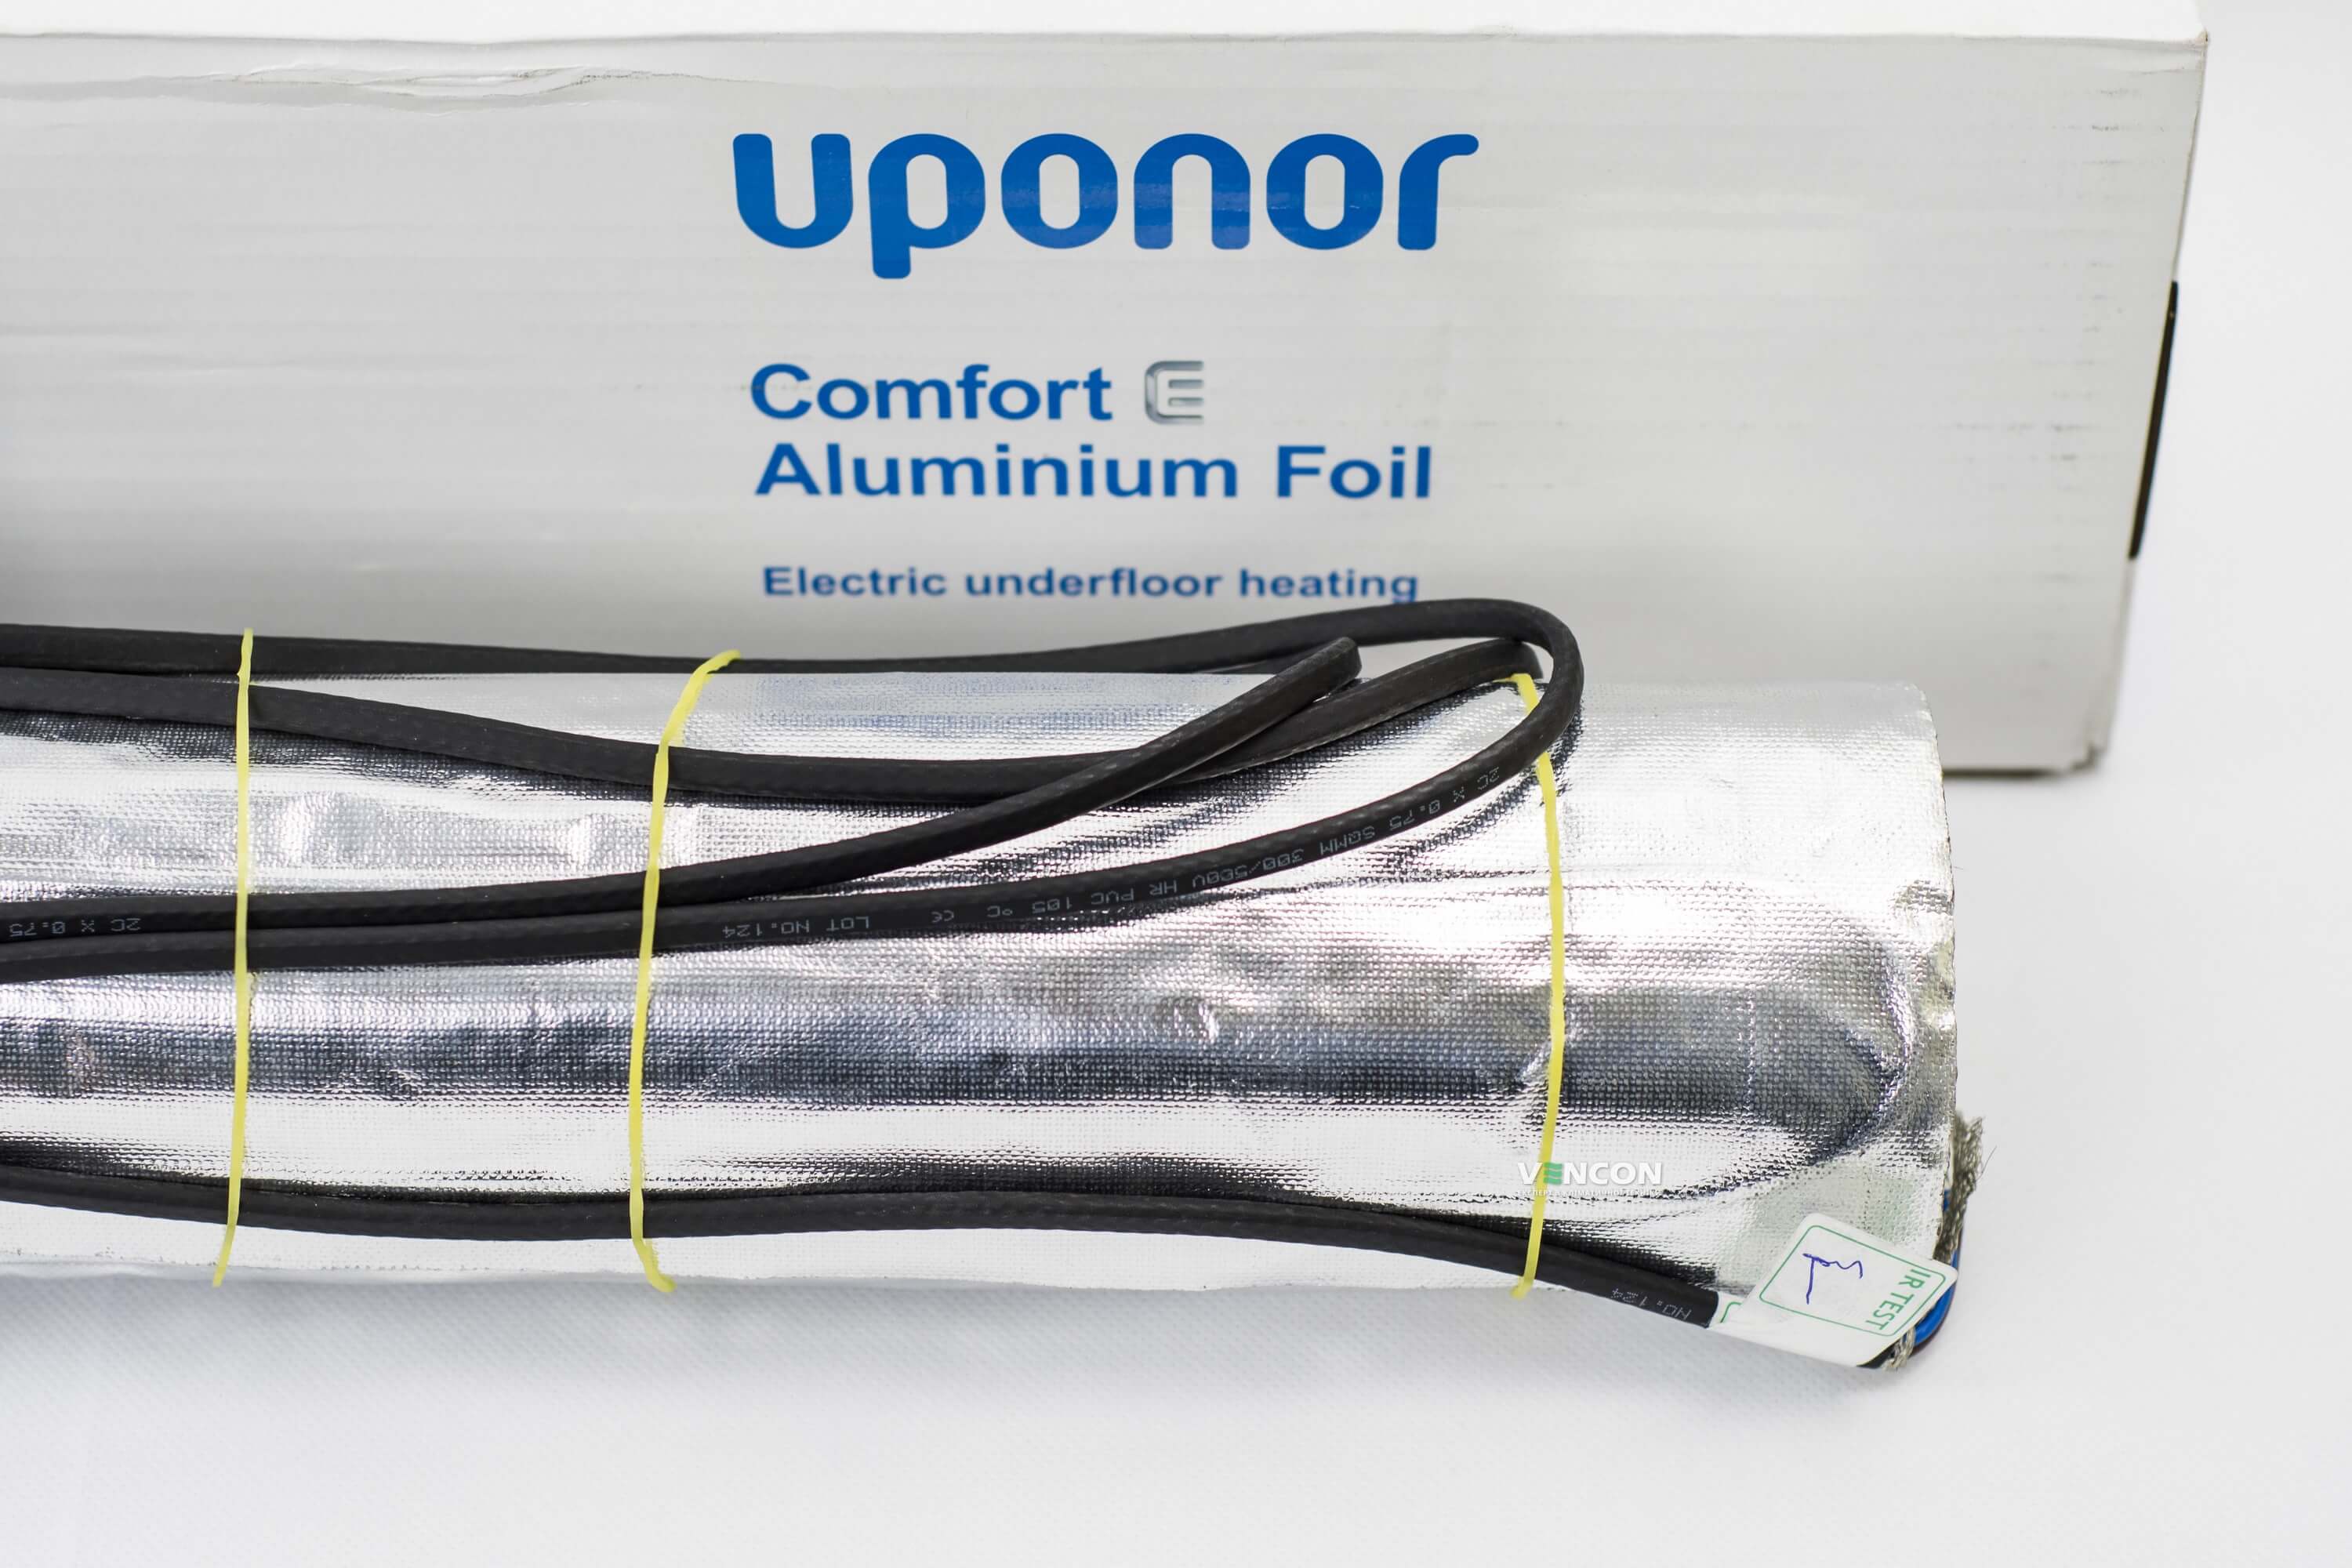 Электрический теплый пол Uponor Aluminium Foil 140-4 отзывы - изображения 5